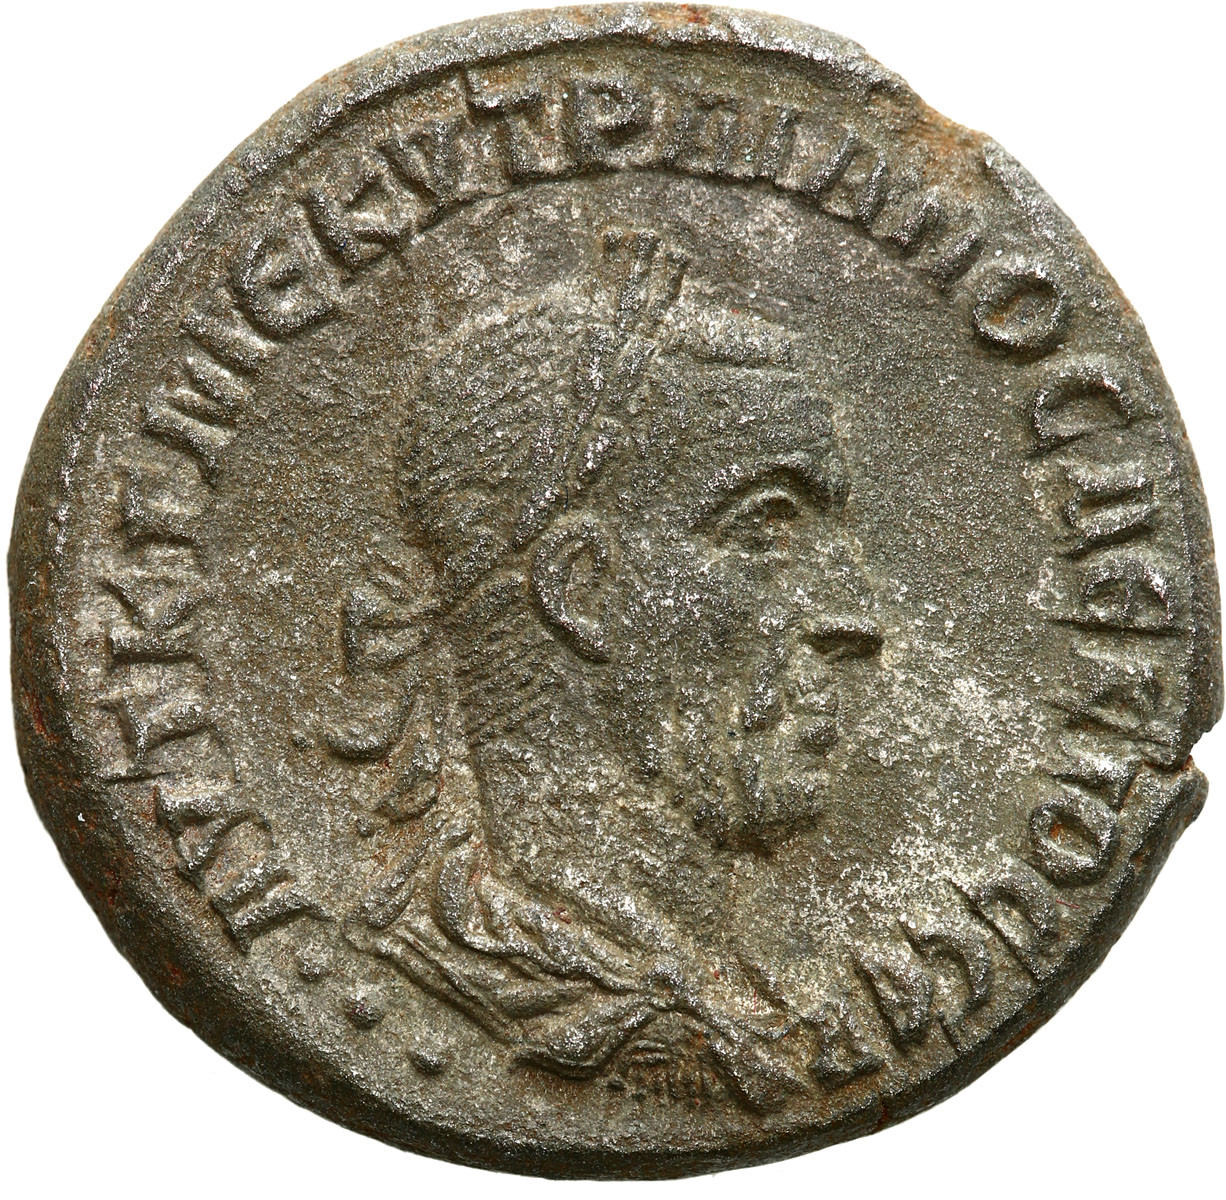 Prowincje Rzymskie - Syria, Tetradrachma, Trajan Decjusz 249 - 251 r. n. e., Antiochia